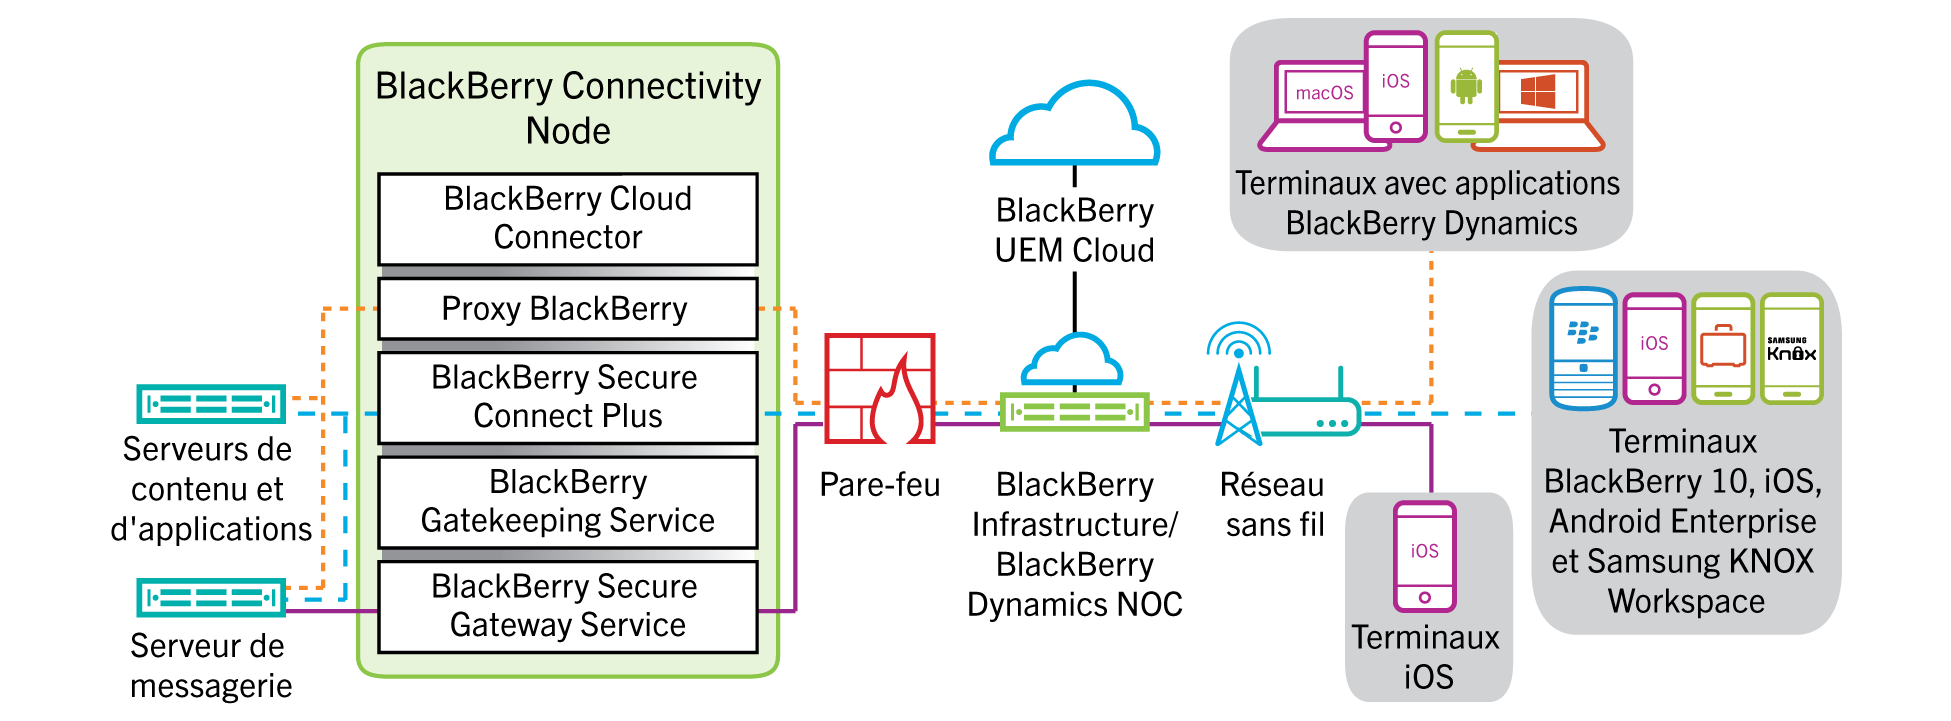 Schéma indiquant les chemins de données possibles vers et depuis les terminaux via BlackBerry Infrastructure